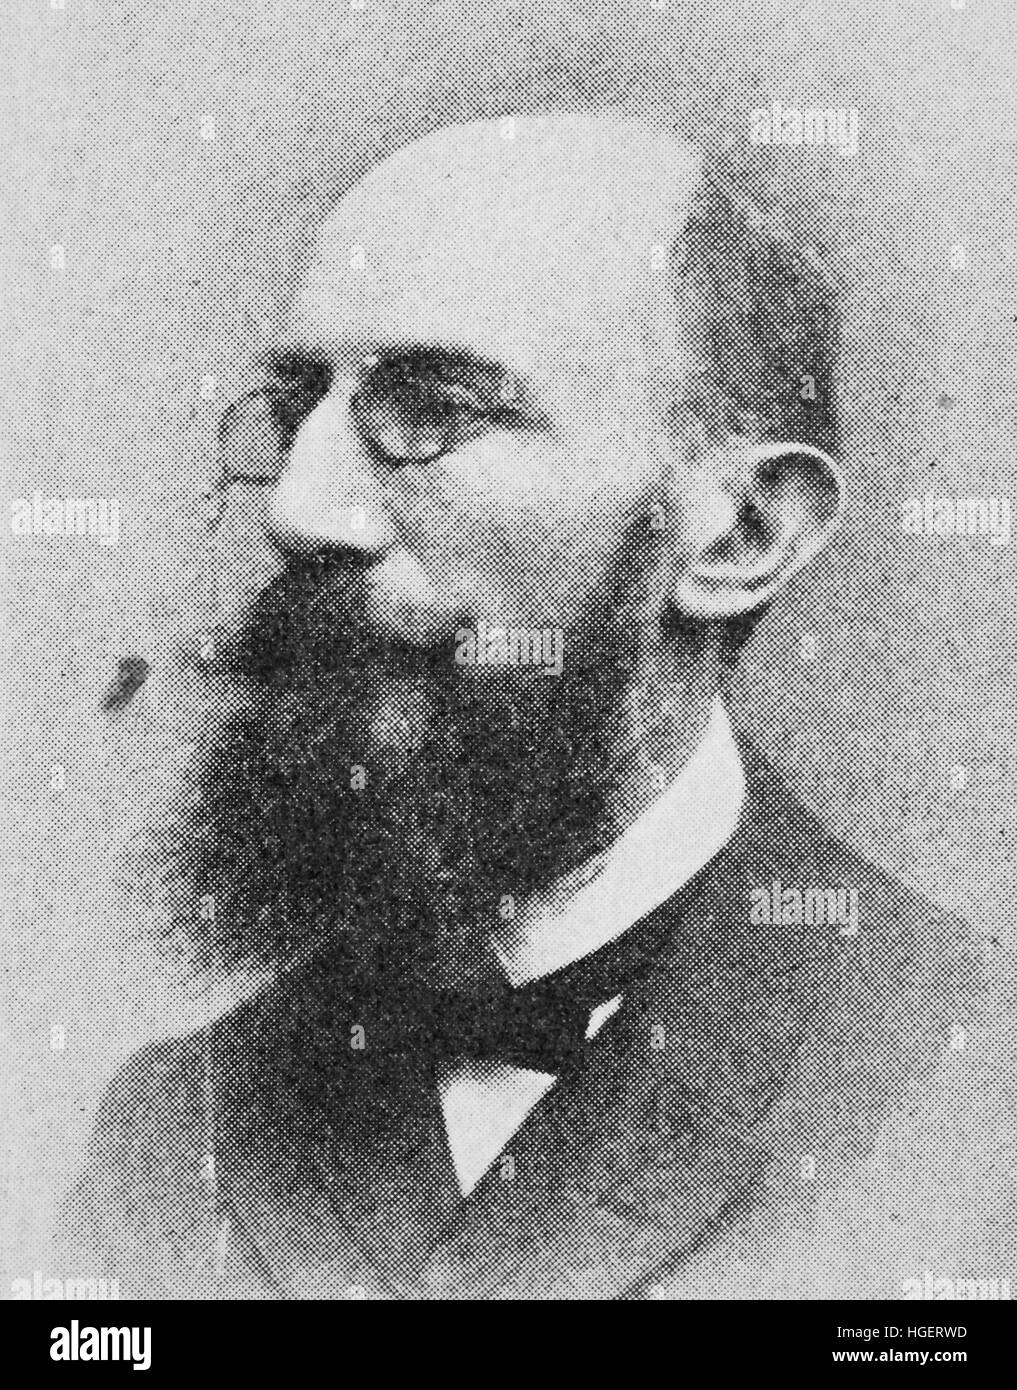 Hermann Wagner, war 23. Juni 1840 - 18. Juni 1929, ein deutscher Geograph und Kartograph, Reproduktion eines Fotos aus dem Jahr 1895, Digital verbessert Stockfoto